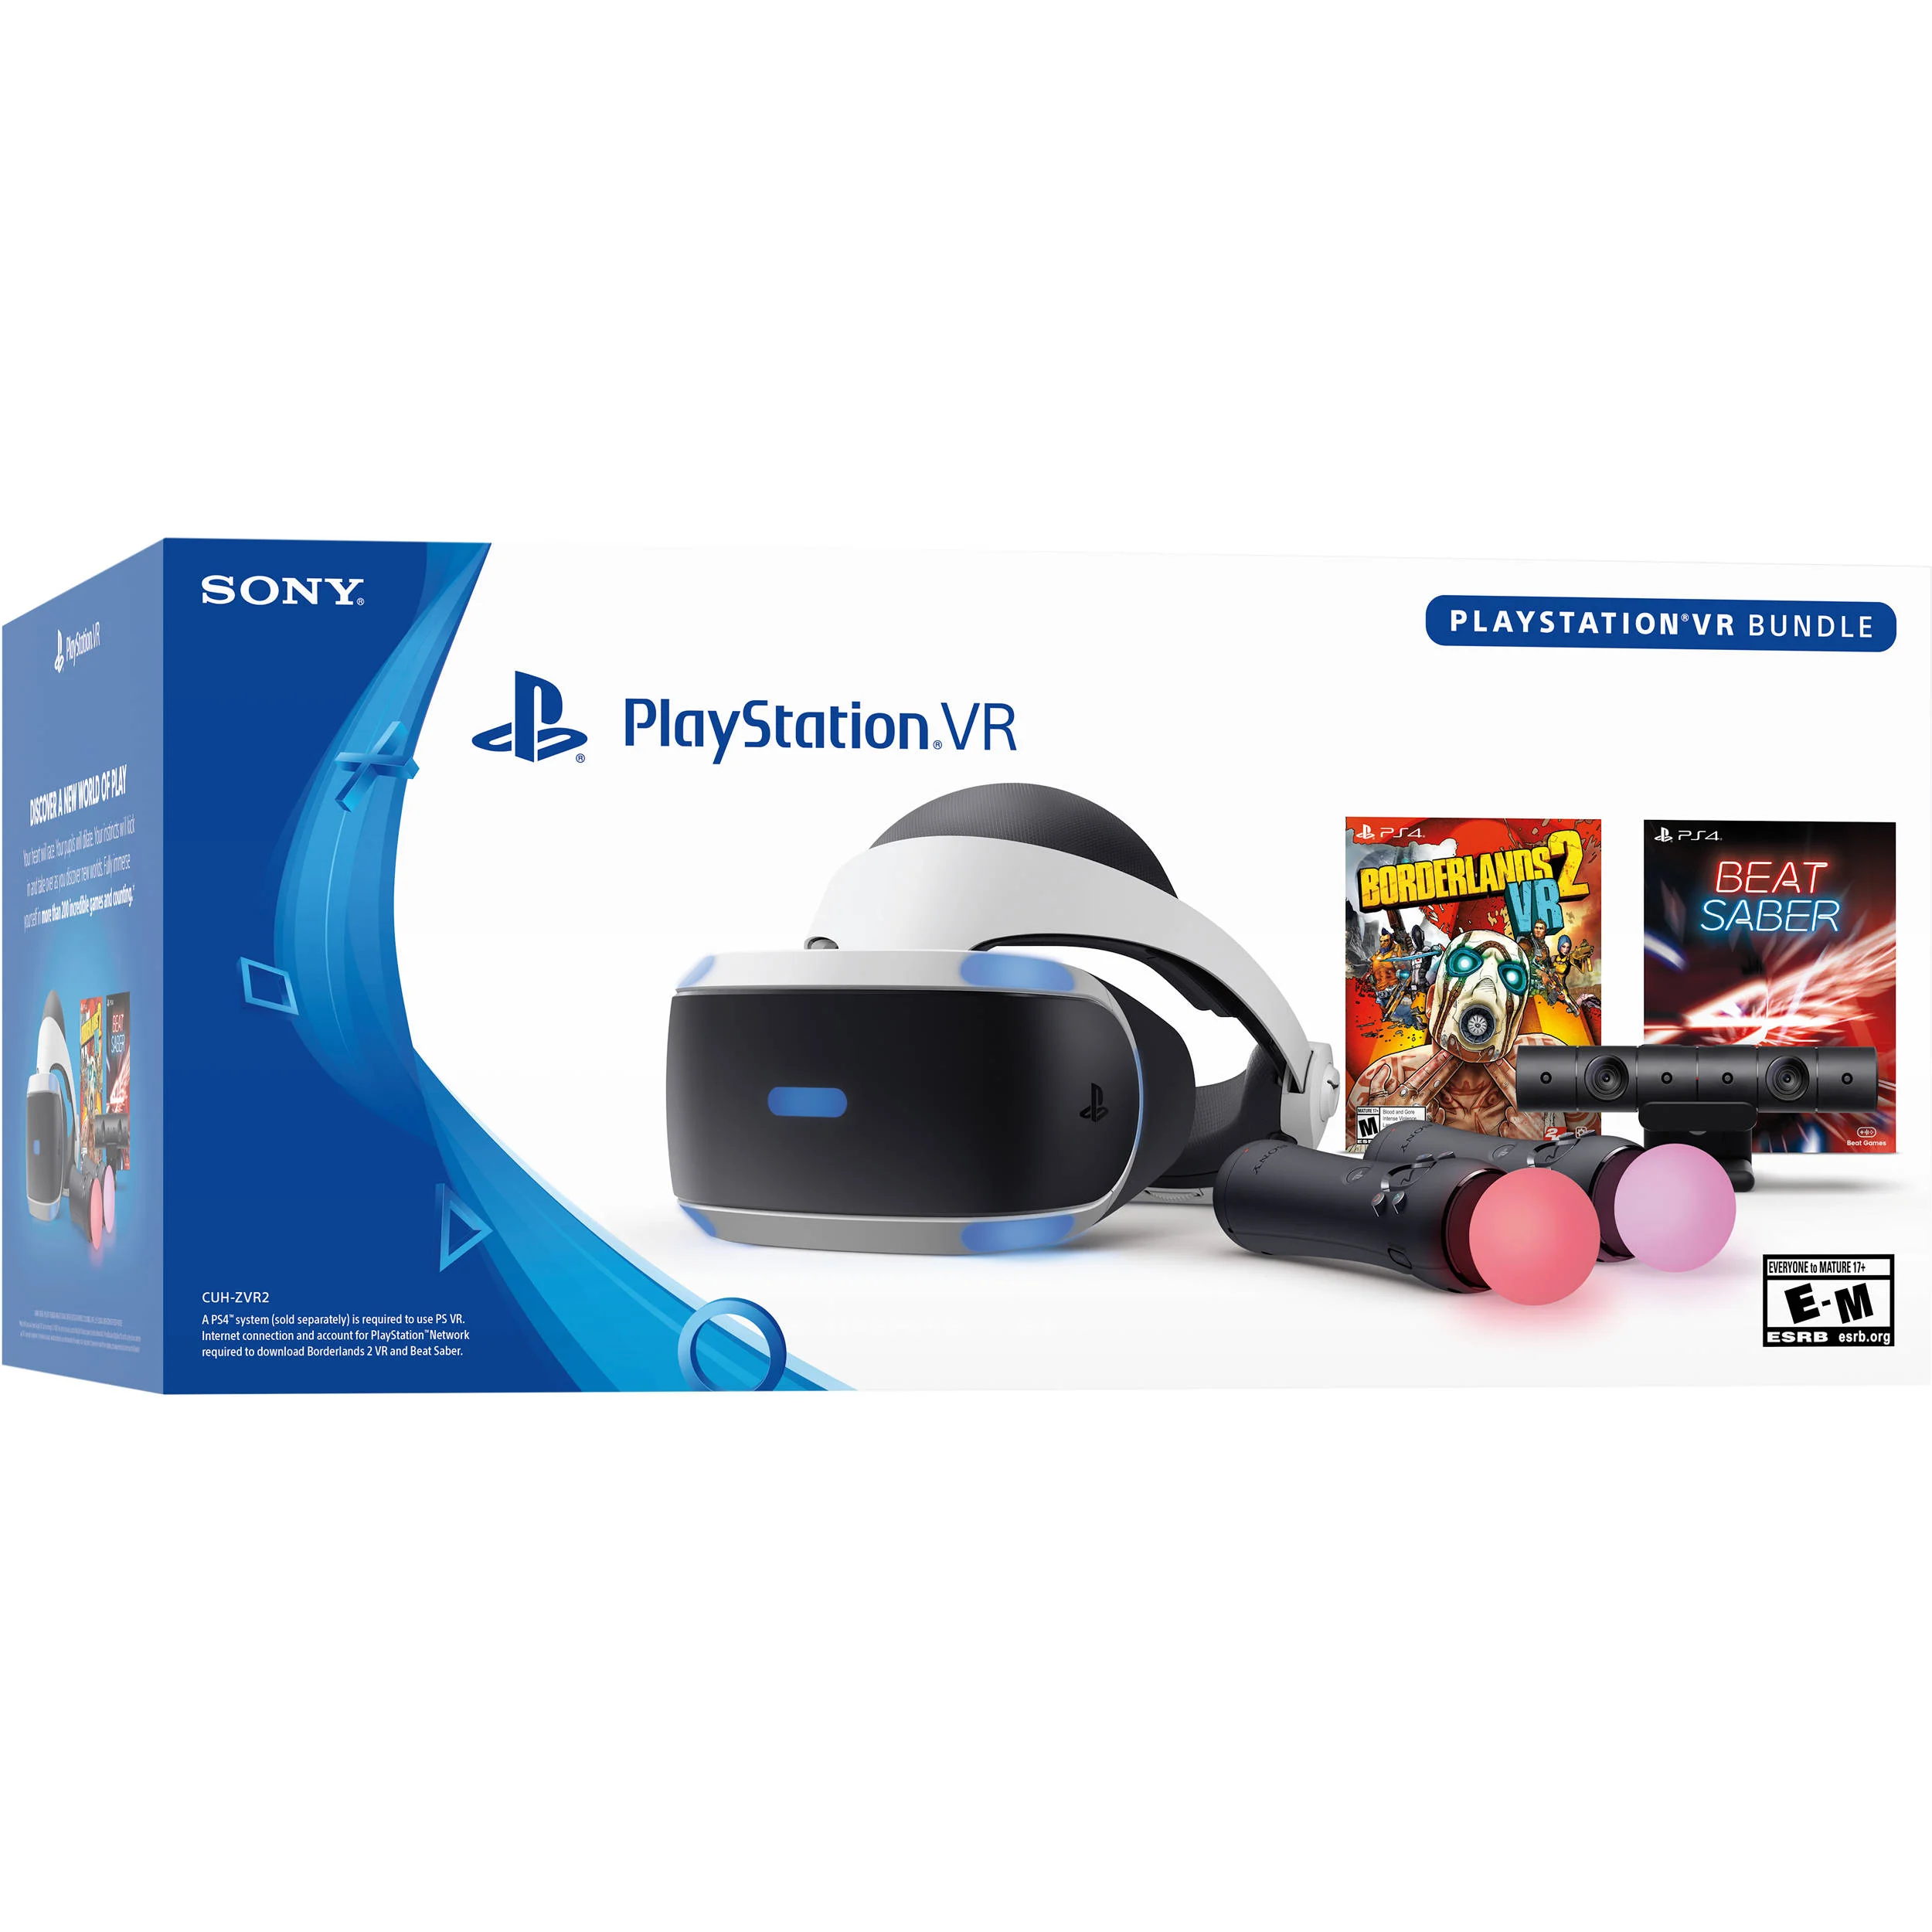  Sony PlayStation VR - Borderlands 2 and Beat Saber Bundle